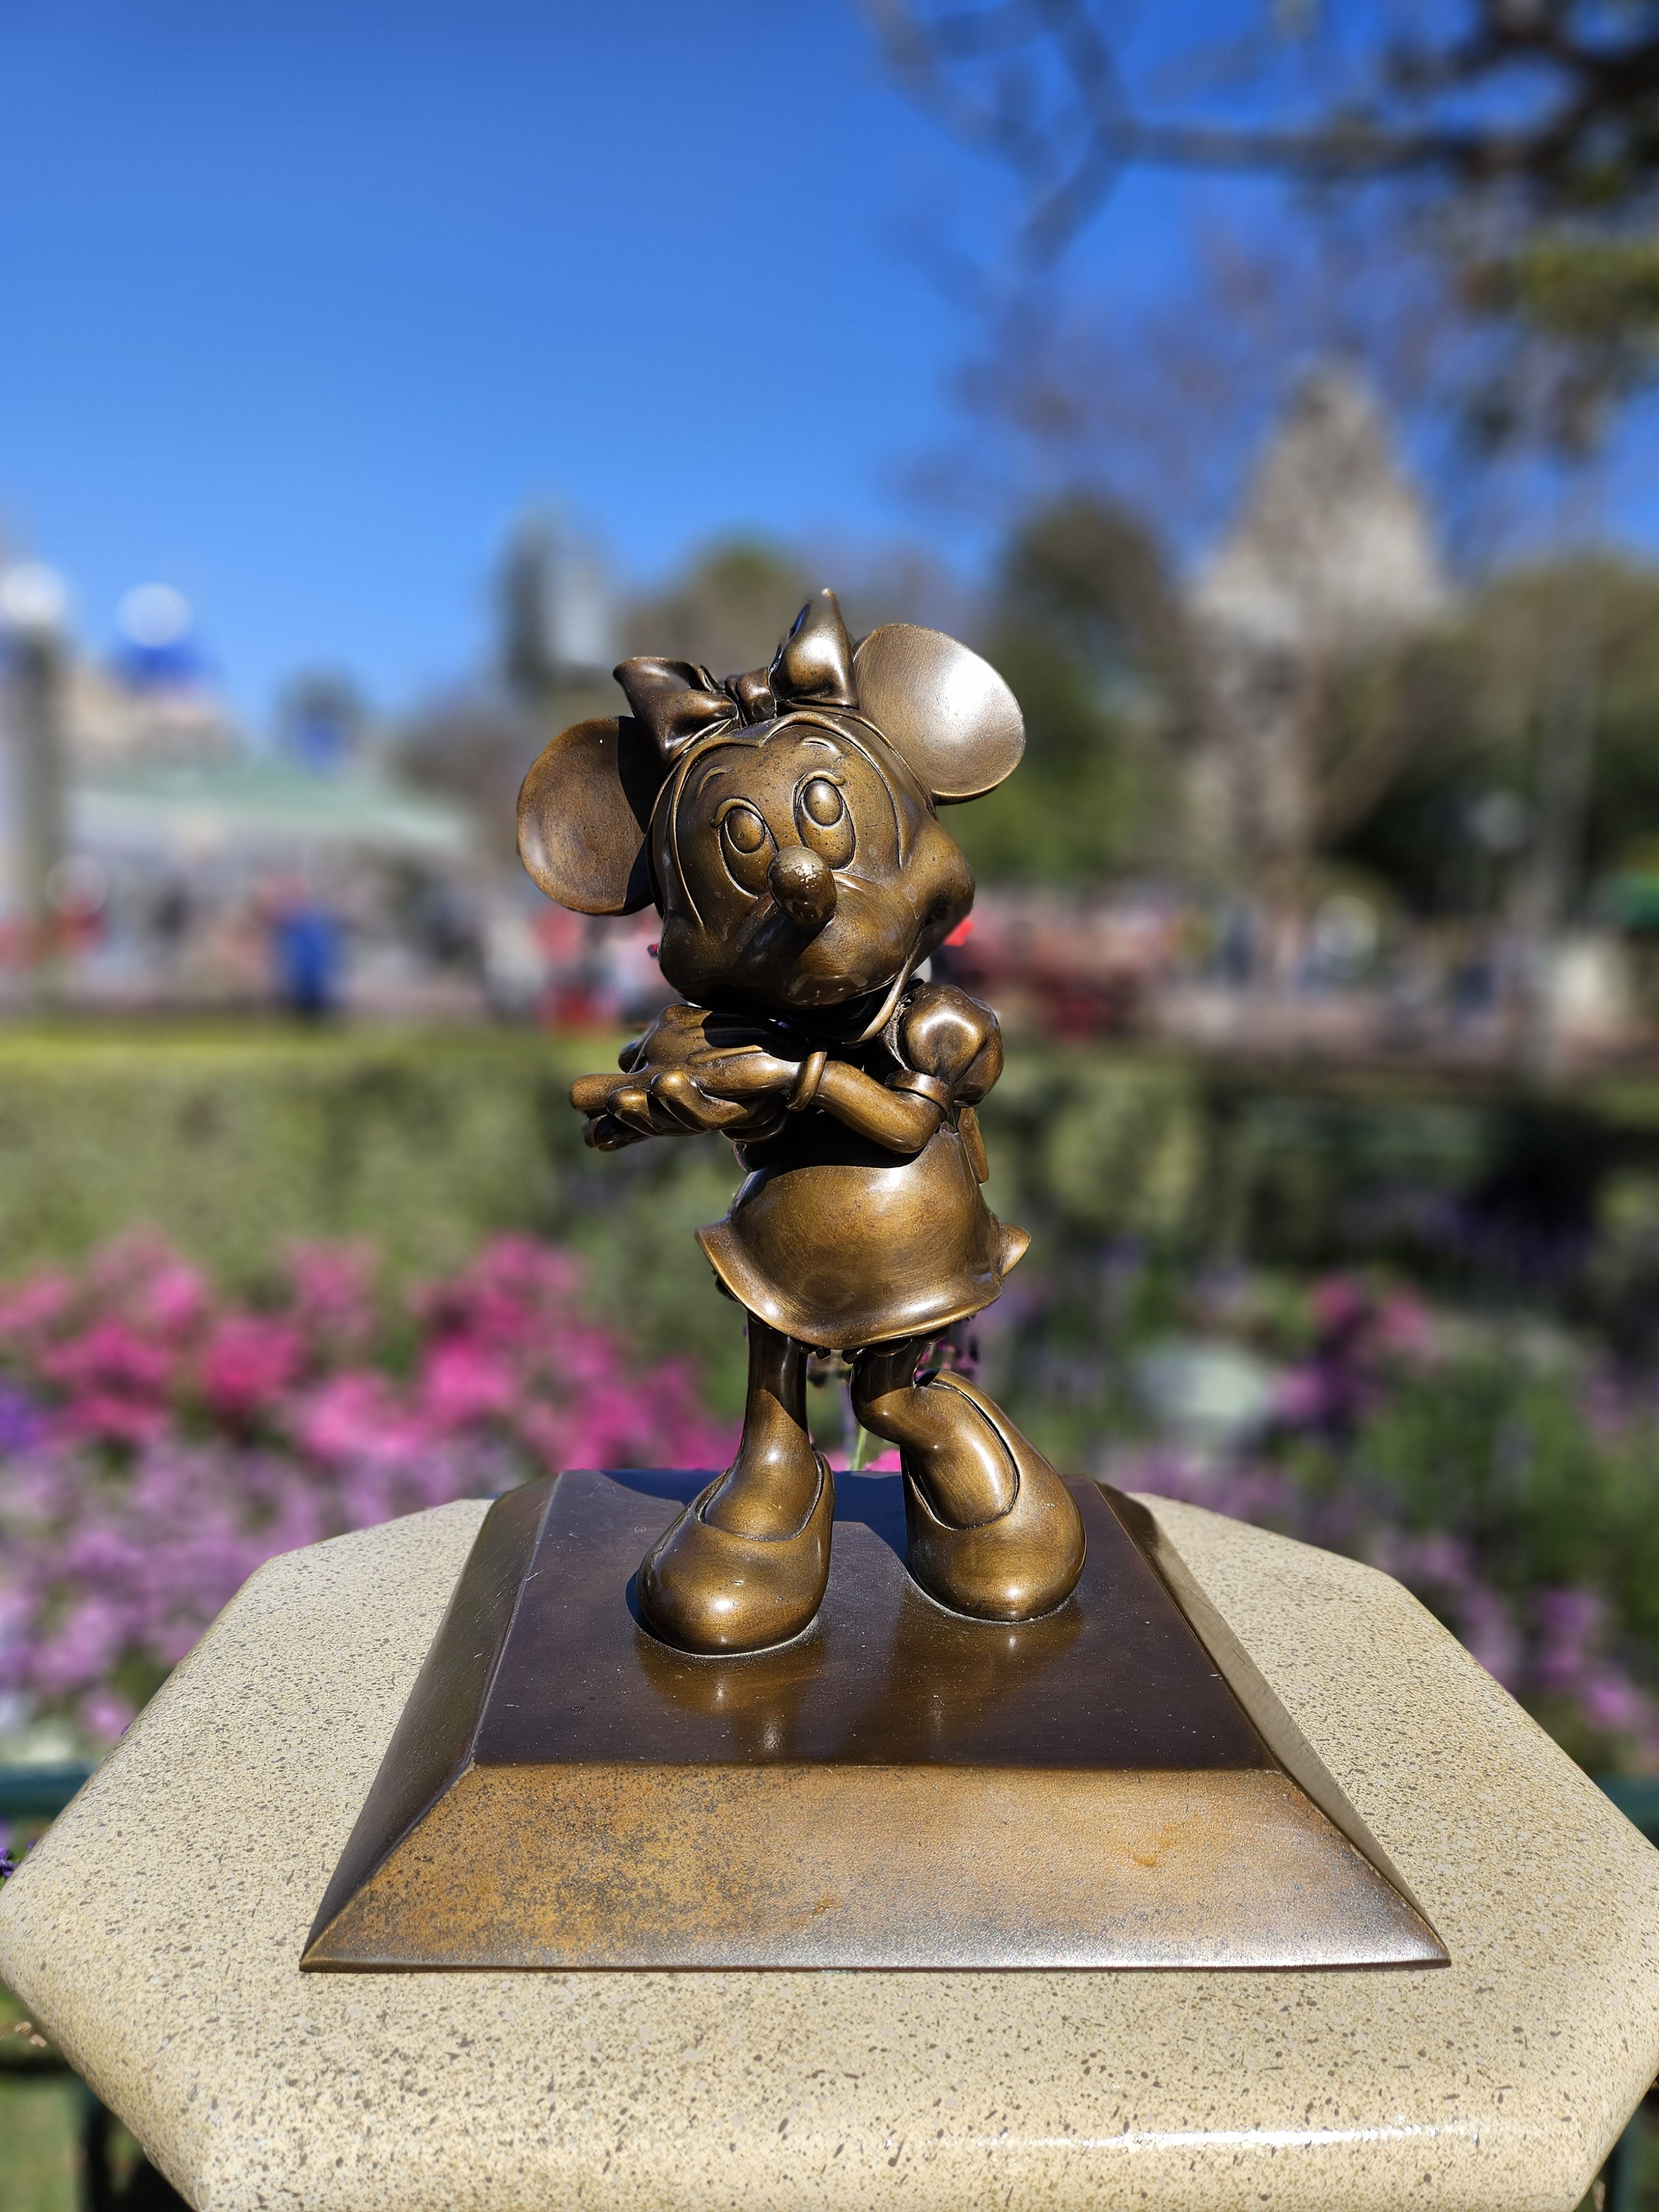 Minnie Mouse statue portrait mode